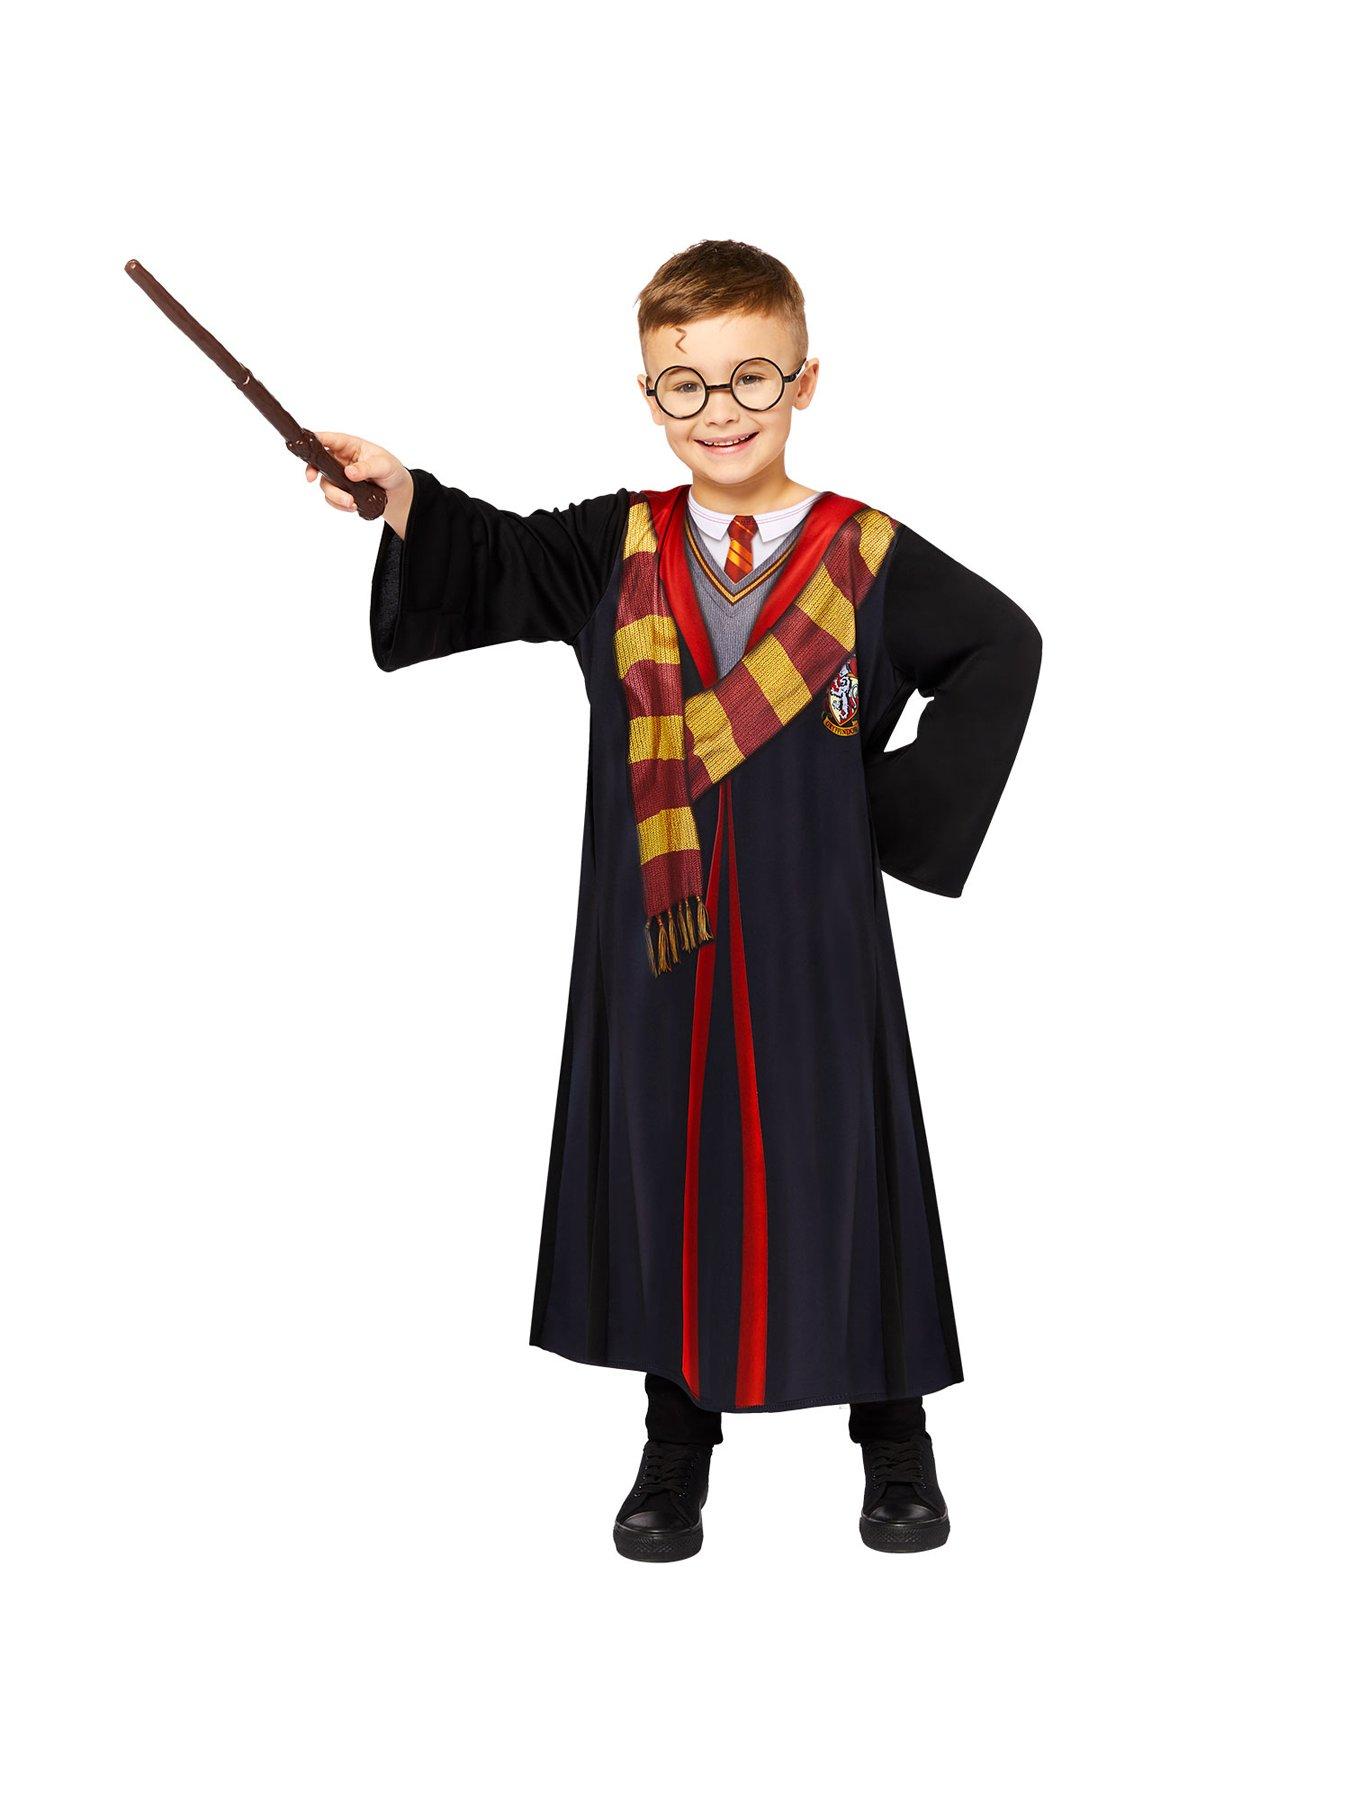 Harry Potter Men's Gryffindor Deluxe Blazer